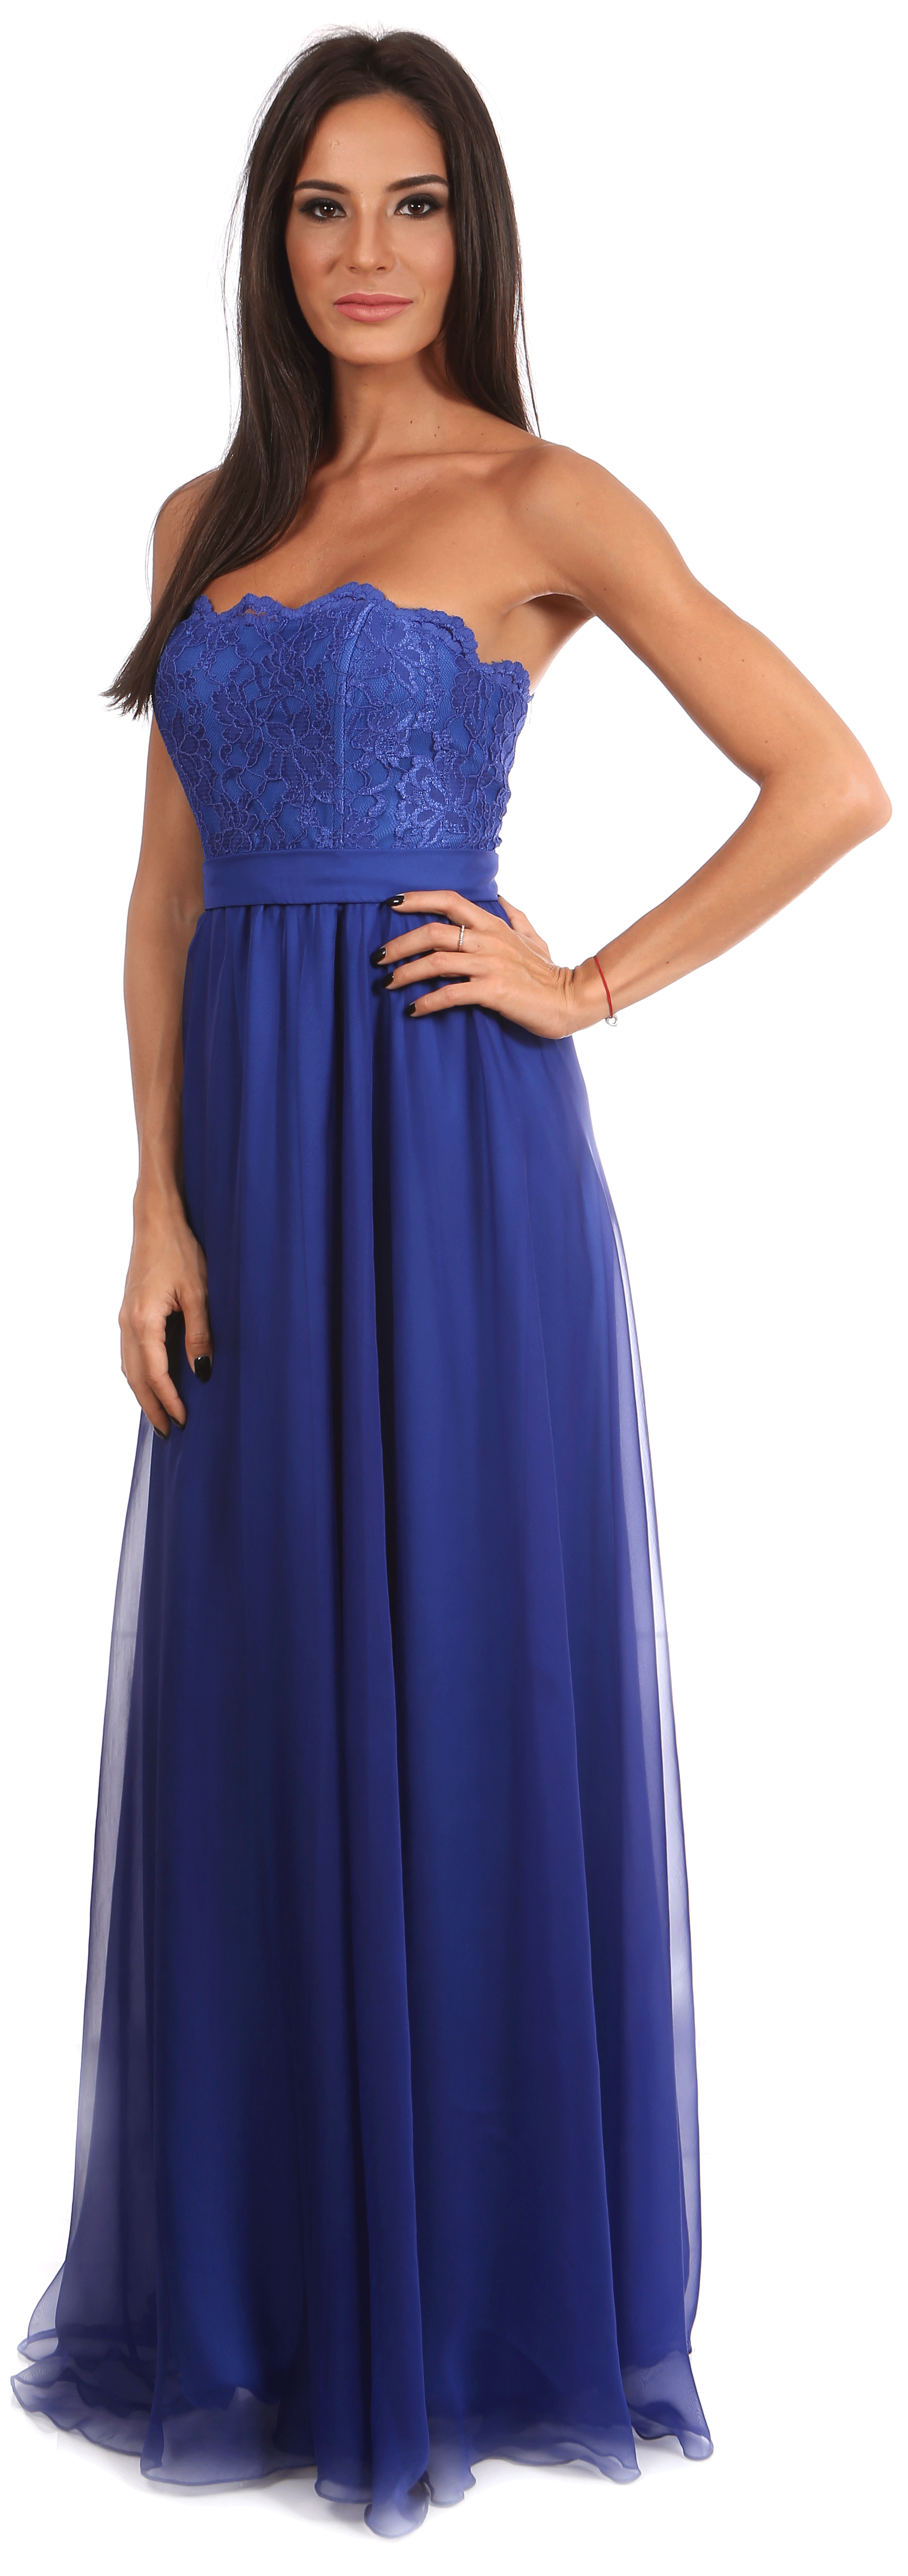 rochie-albastra